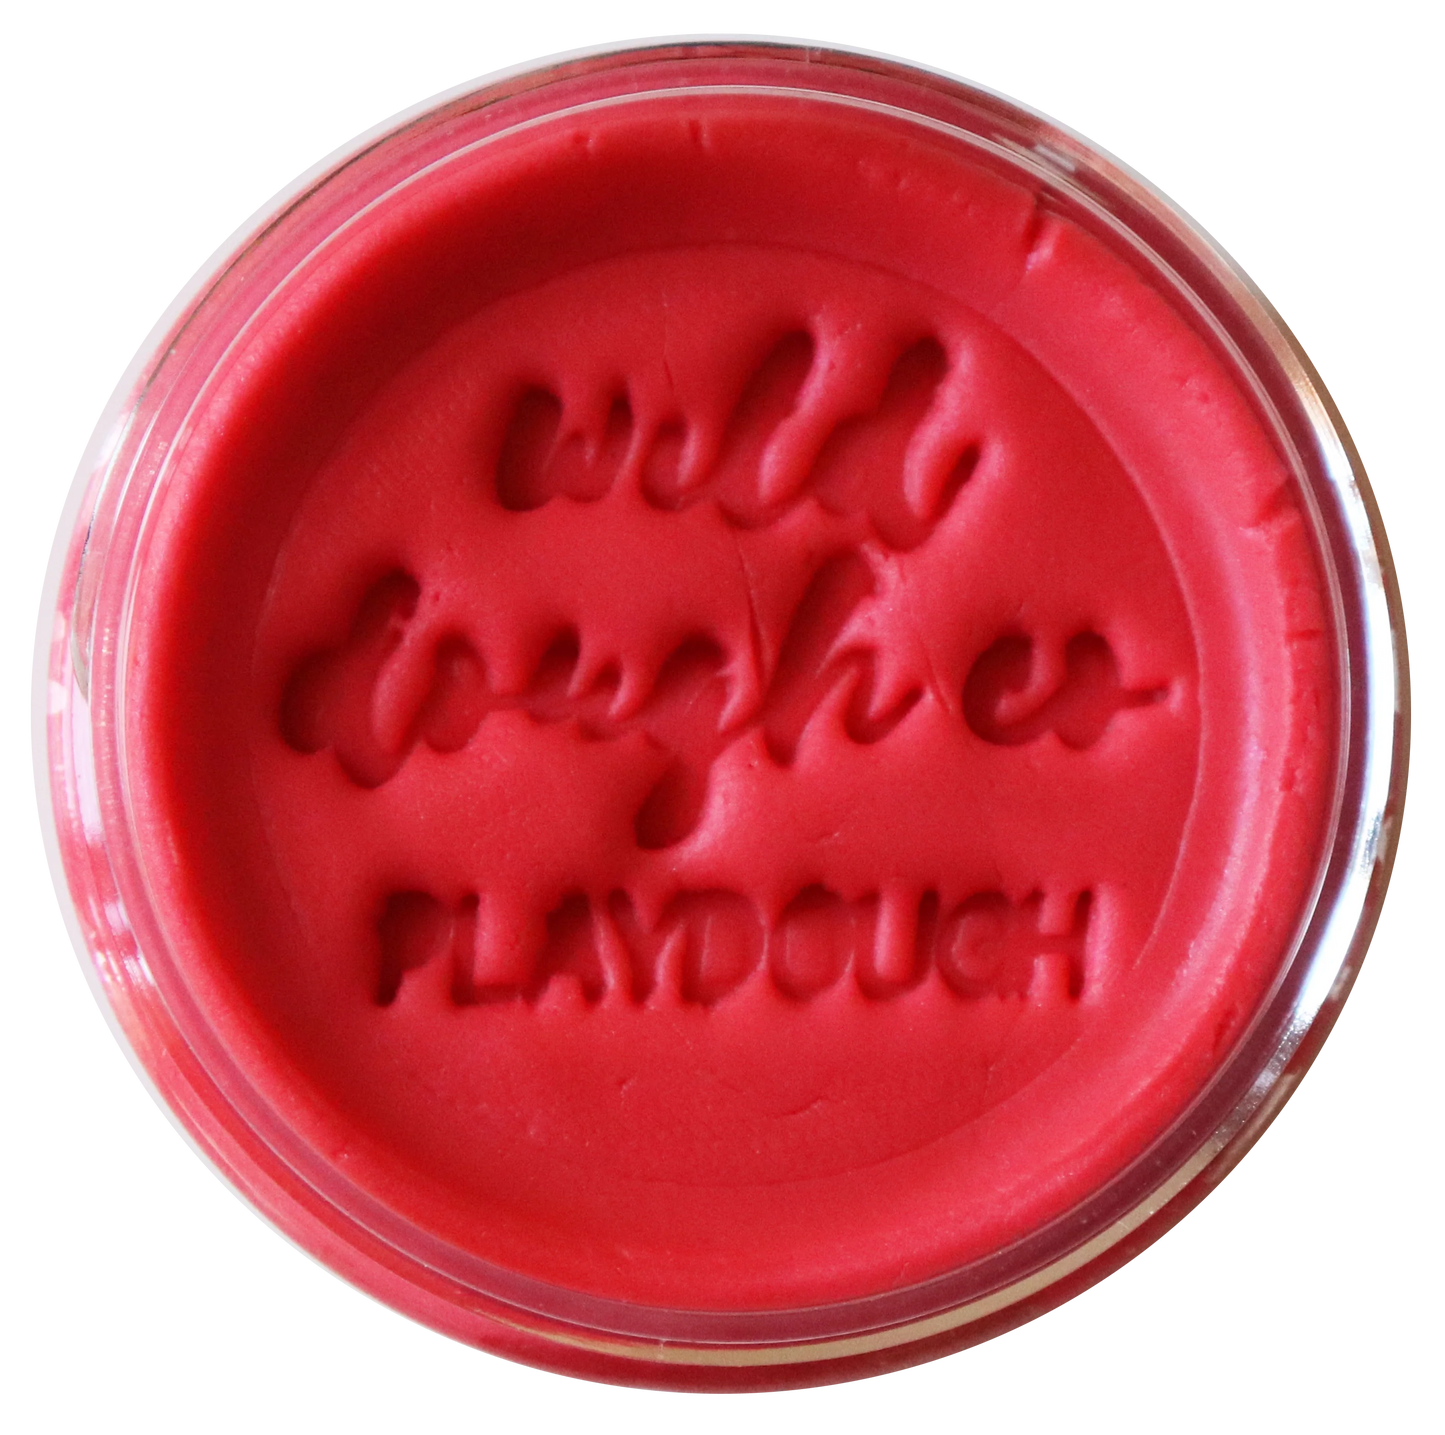 Playdough - 280g Jar